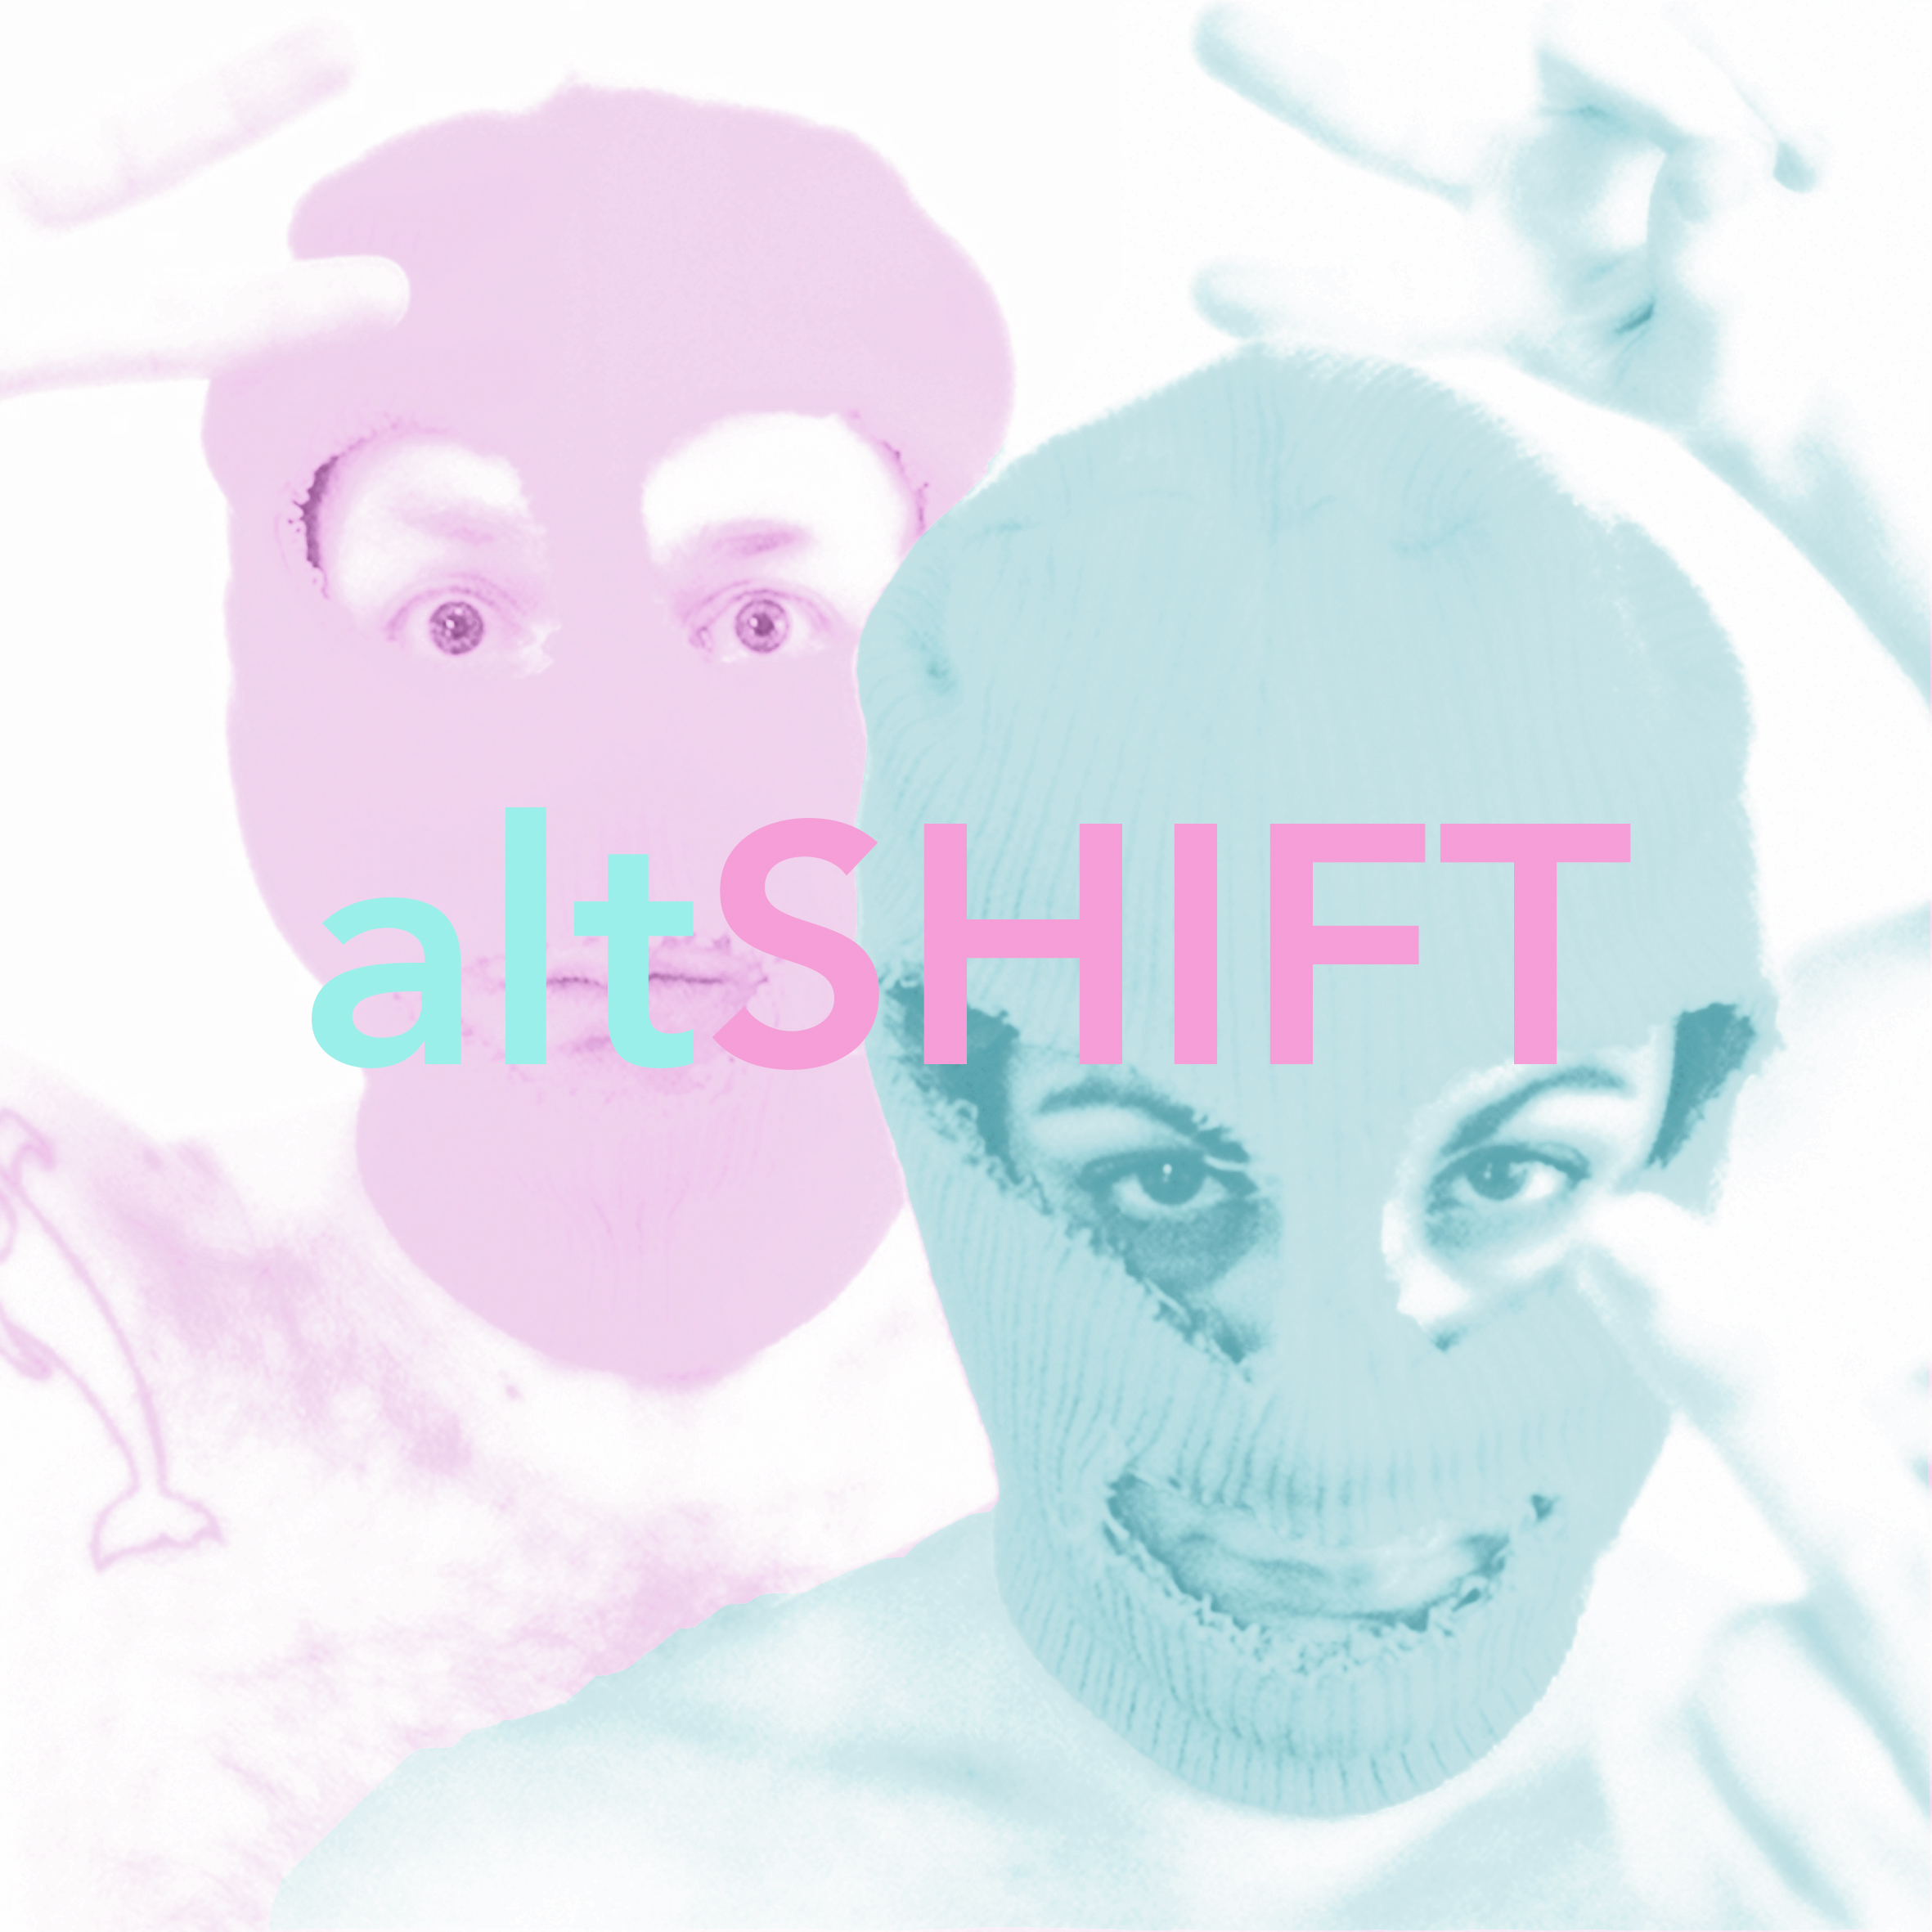 AltShift